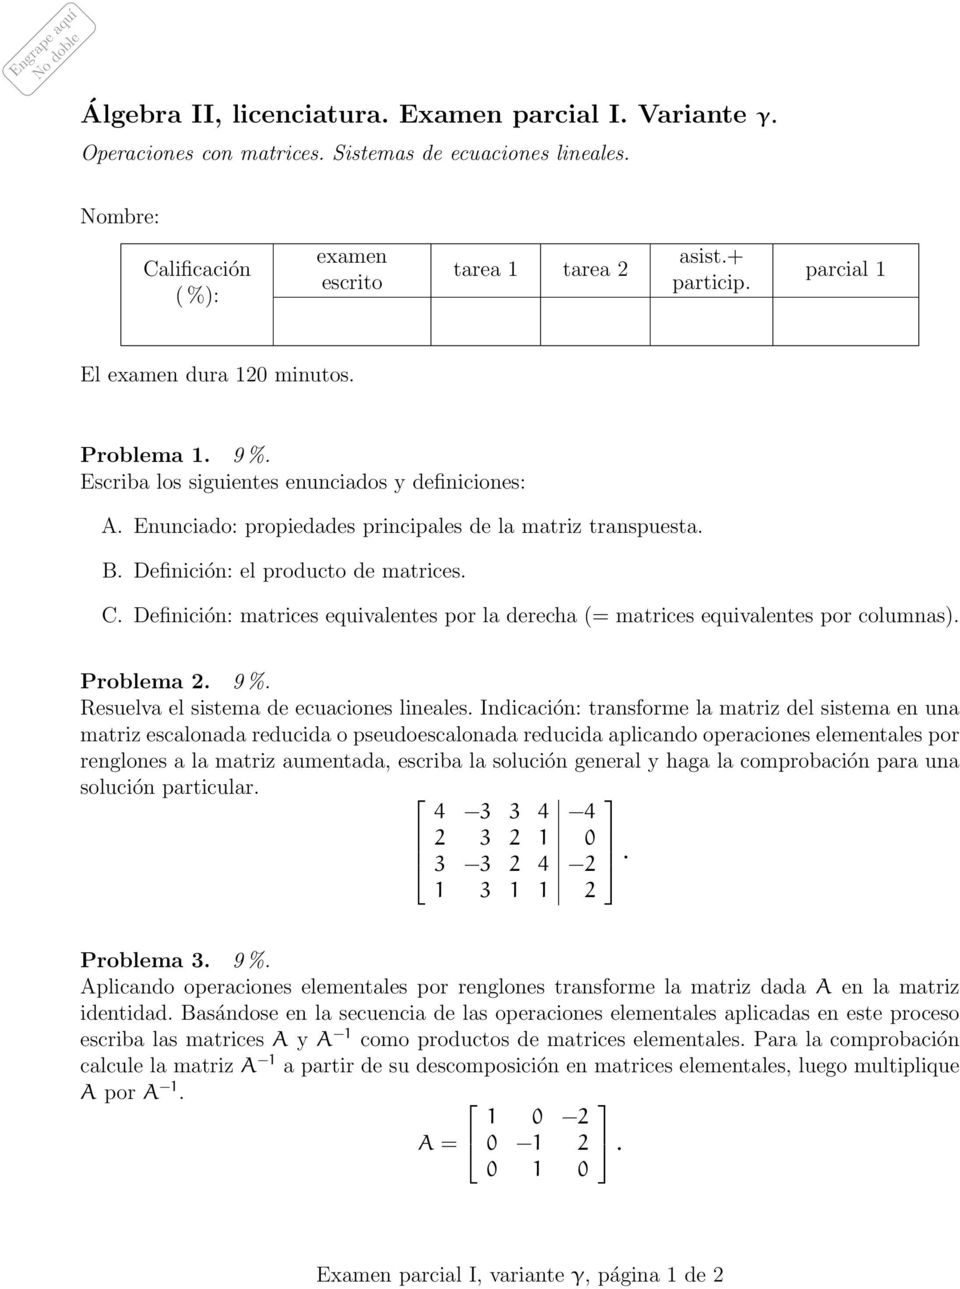 Enunciado: propiedades principales de la matriz transpuesta. B. Definición: el producto de matrices. C. Definición: matrices equivalentes por la derecha (= matrices equivalentes por columnas).